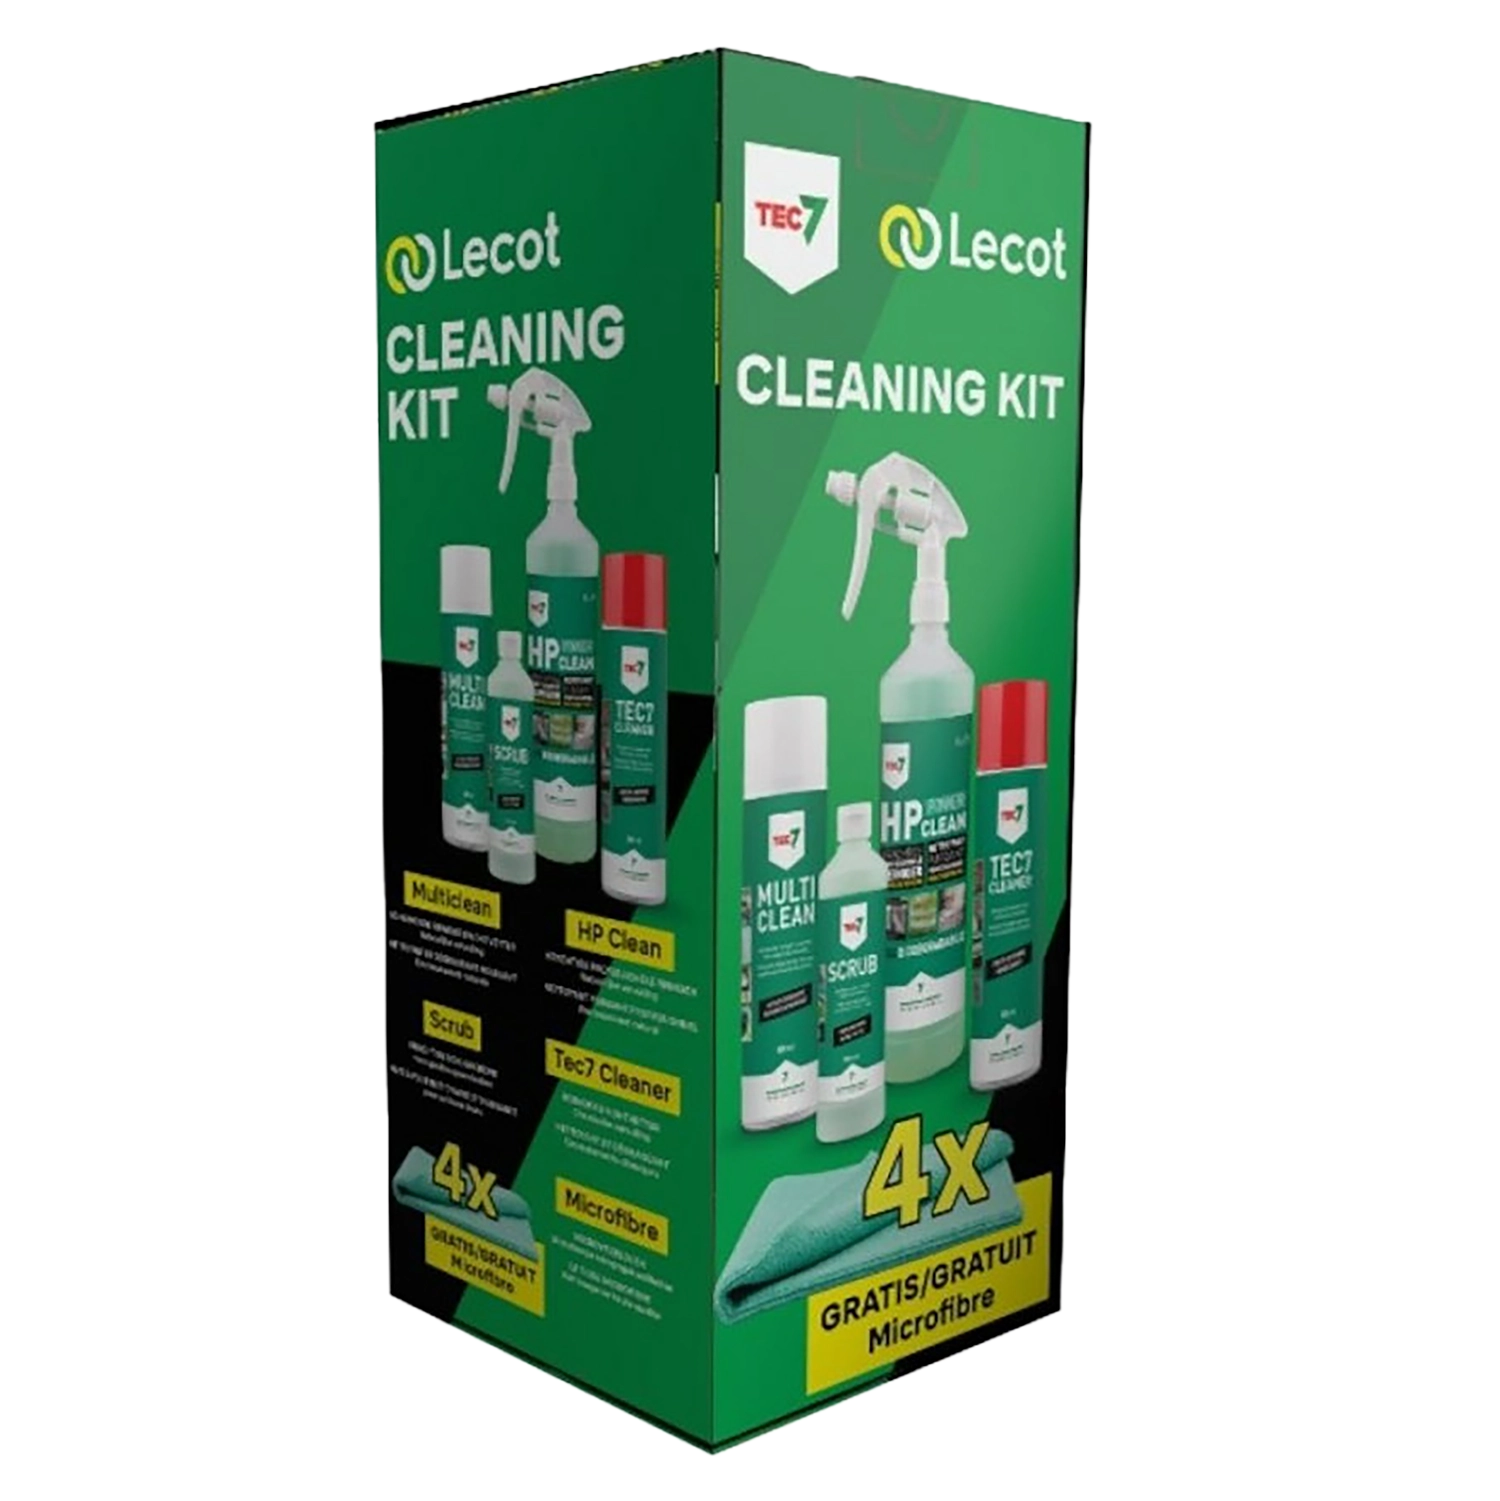 Cleaning kit - multiclean, hp clean, scrub, tec7 cleaner + 4 vezeldoeken